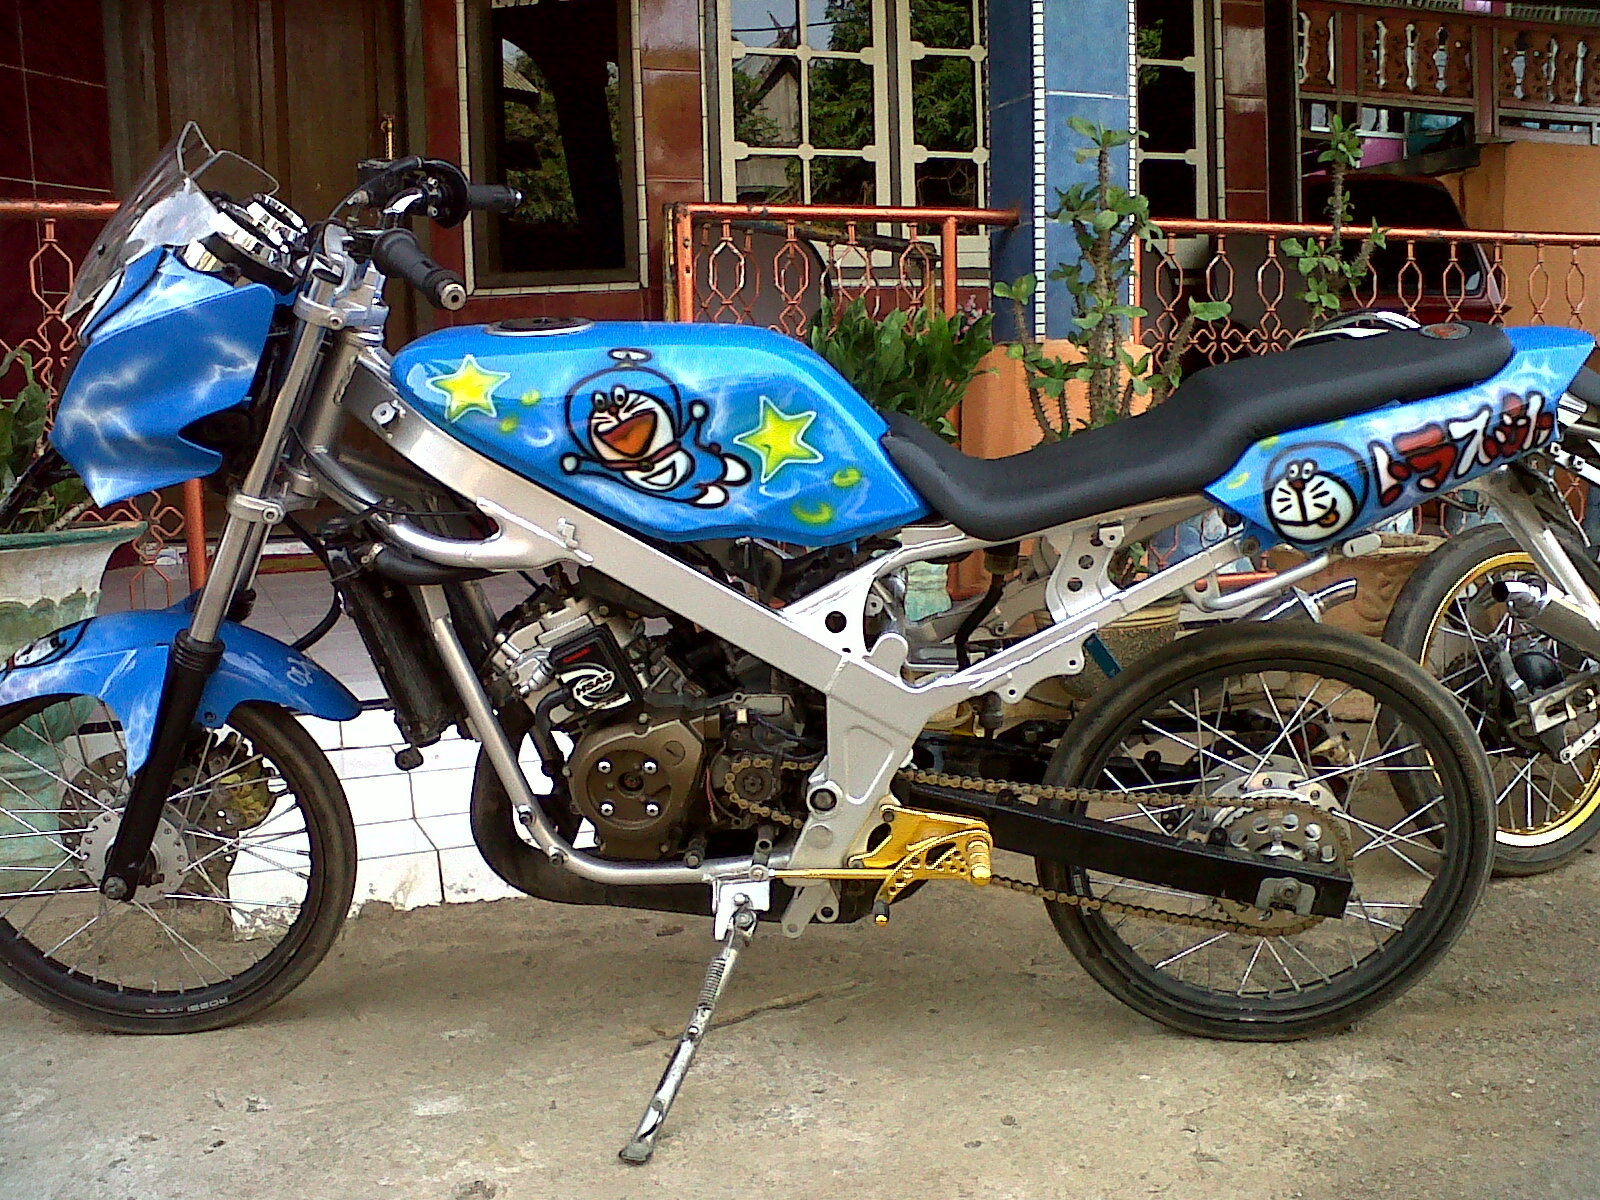 99 Gambar Motor Ninja Drag Bike Terbaru Dan Terlengkap Obeng Motor